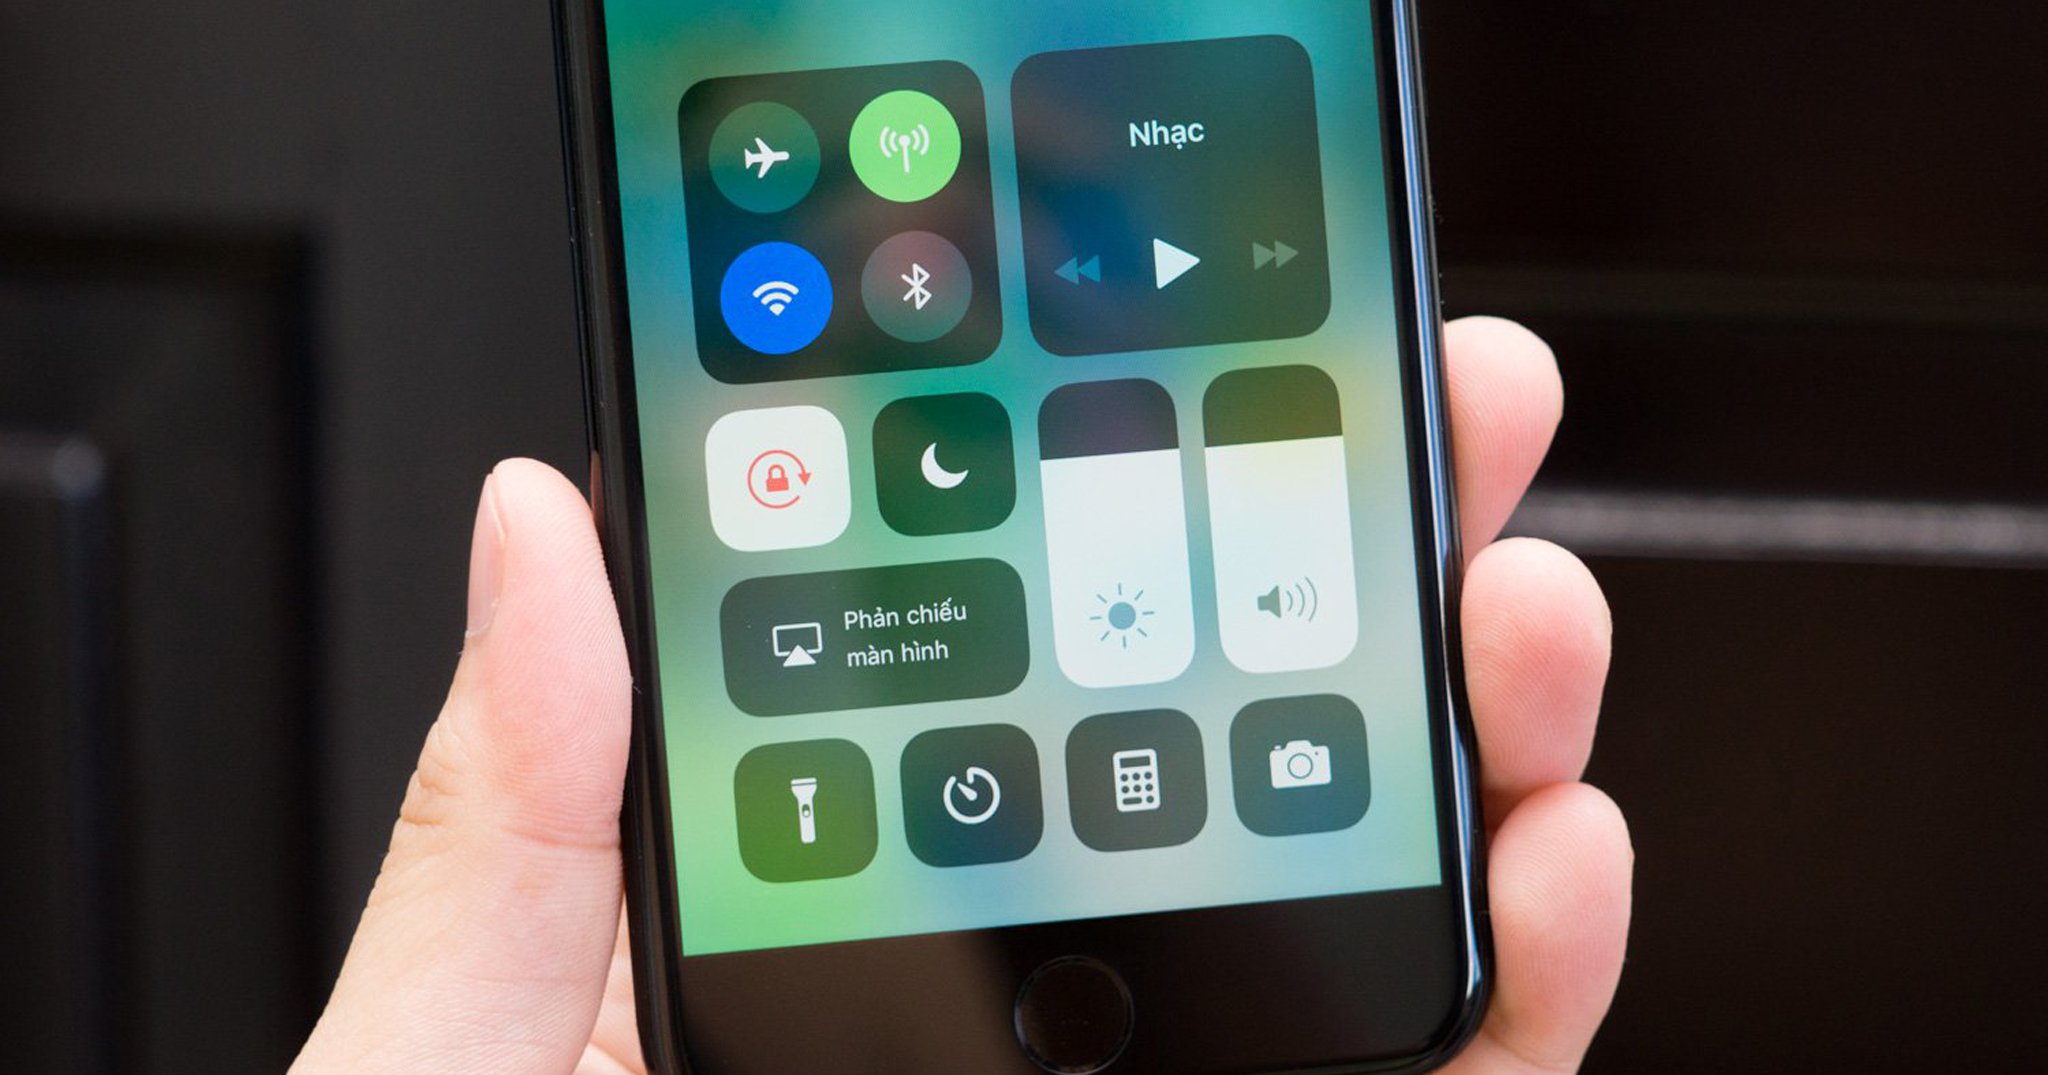 Mời anh em cập nhật iOS 11.3.1, sửa lỗi màn hình bên thứ ba trên iPhone 8, nâng cao bảo mật